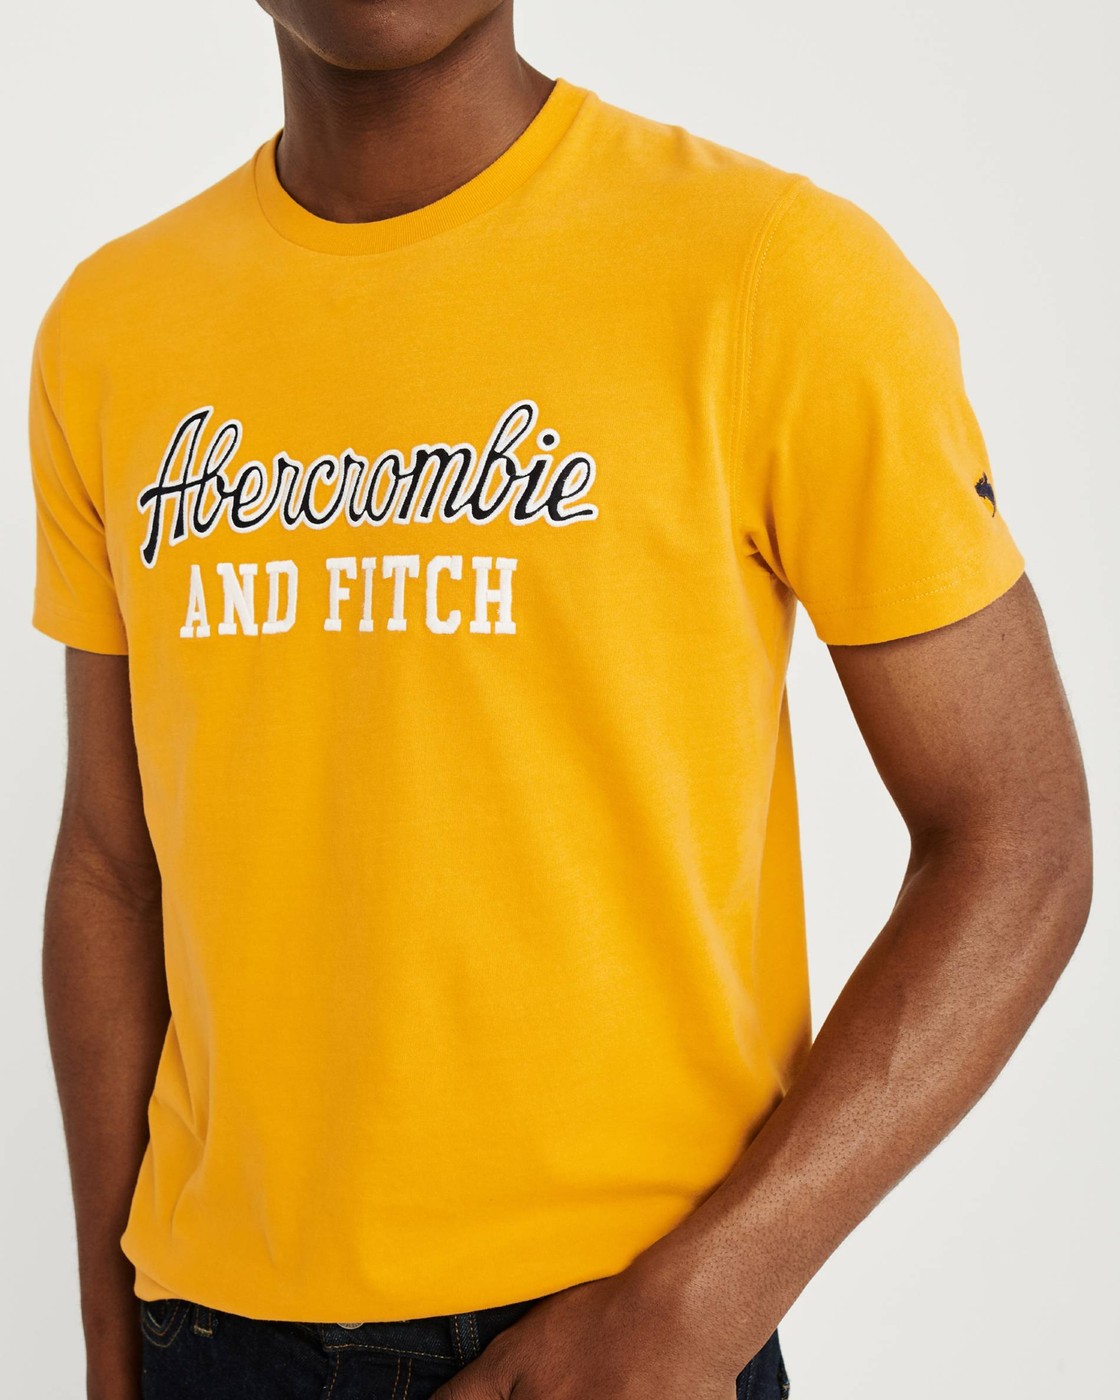 Желтая футболка - мужская футболка Abercrombie & Fitch